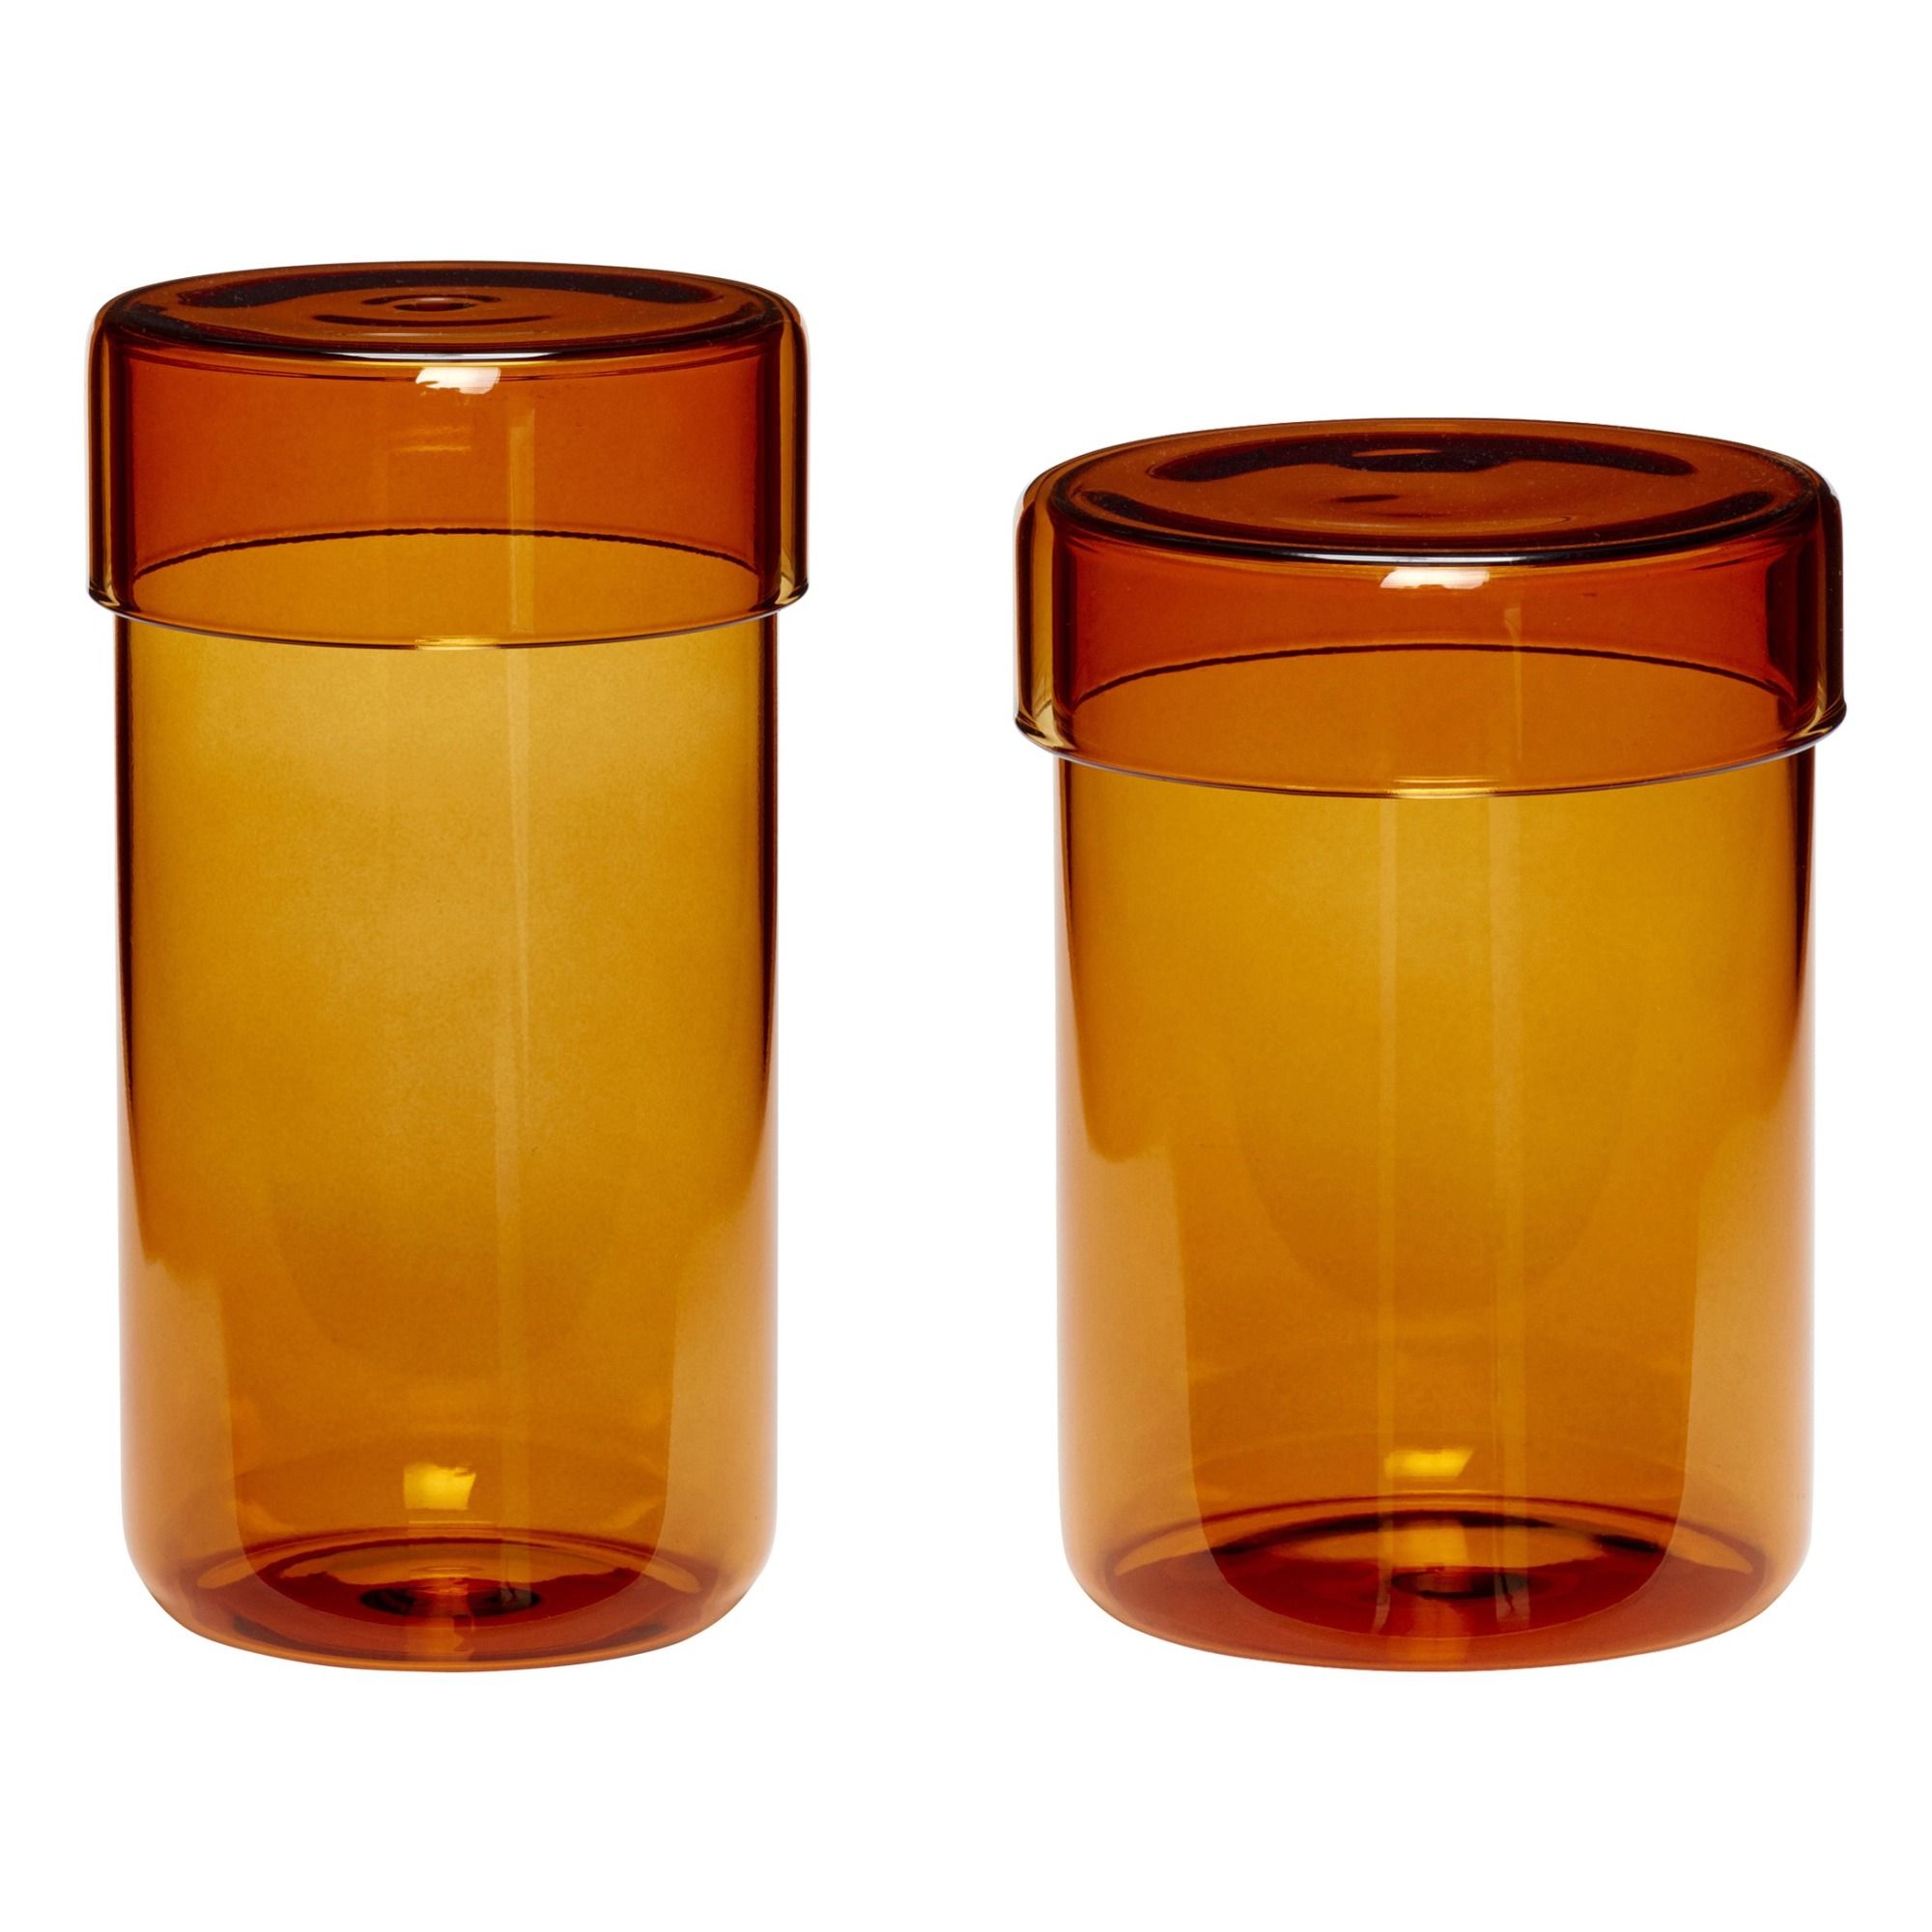 Hubsch - Pot en verre - Set de 2 - Ambre